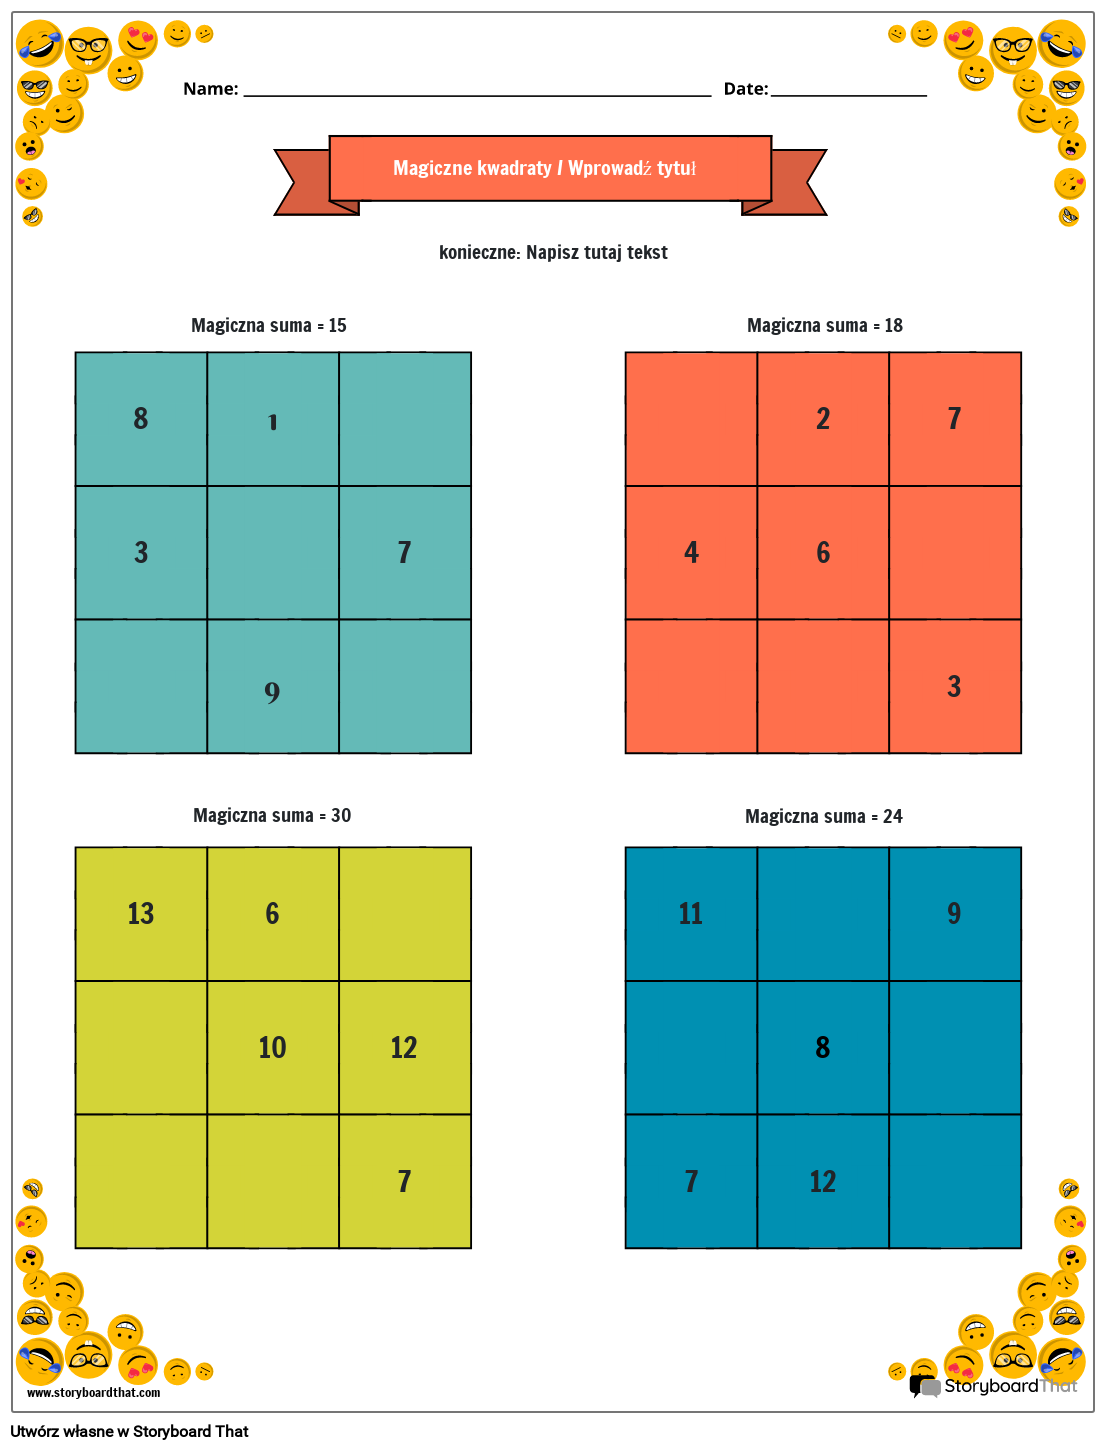 Arkusz magicznych kwadratów 3x3 z obramowaniem uśmiechniętej buźki